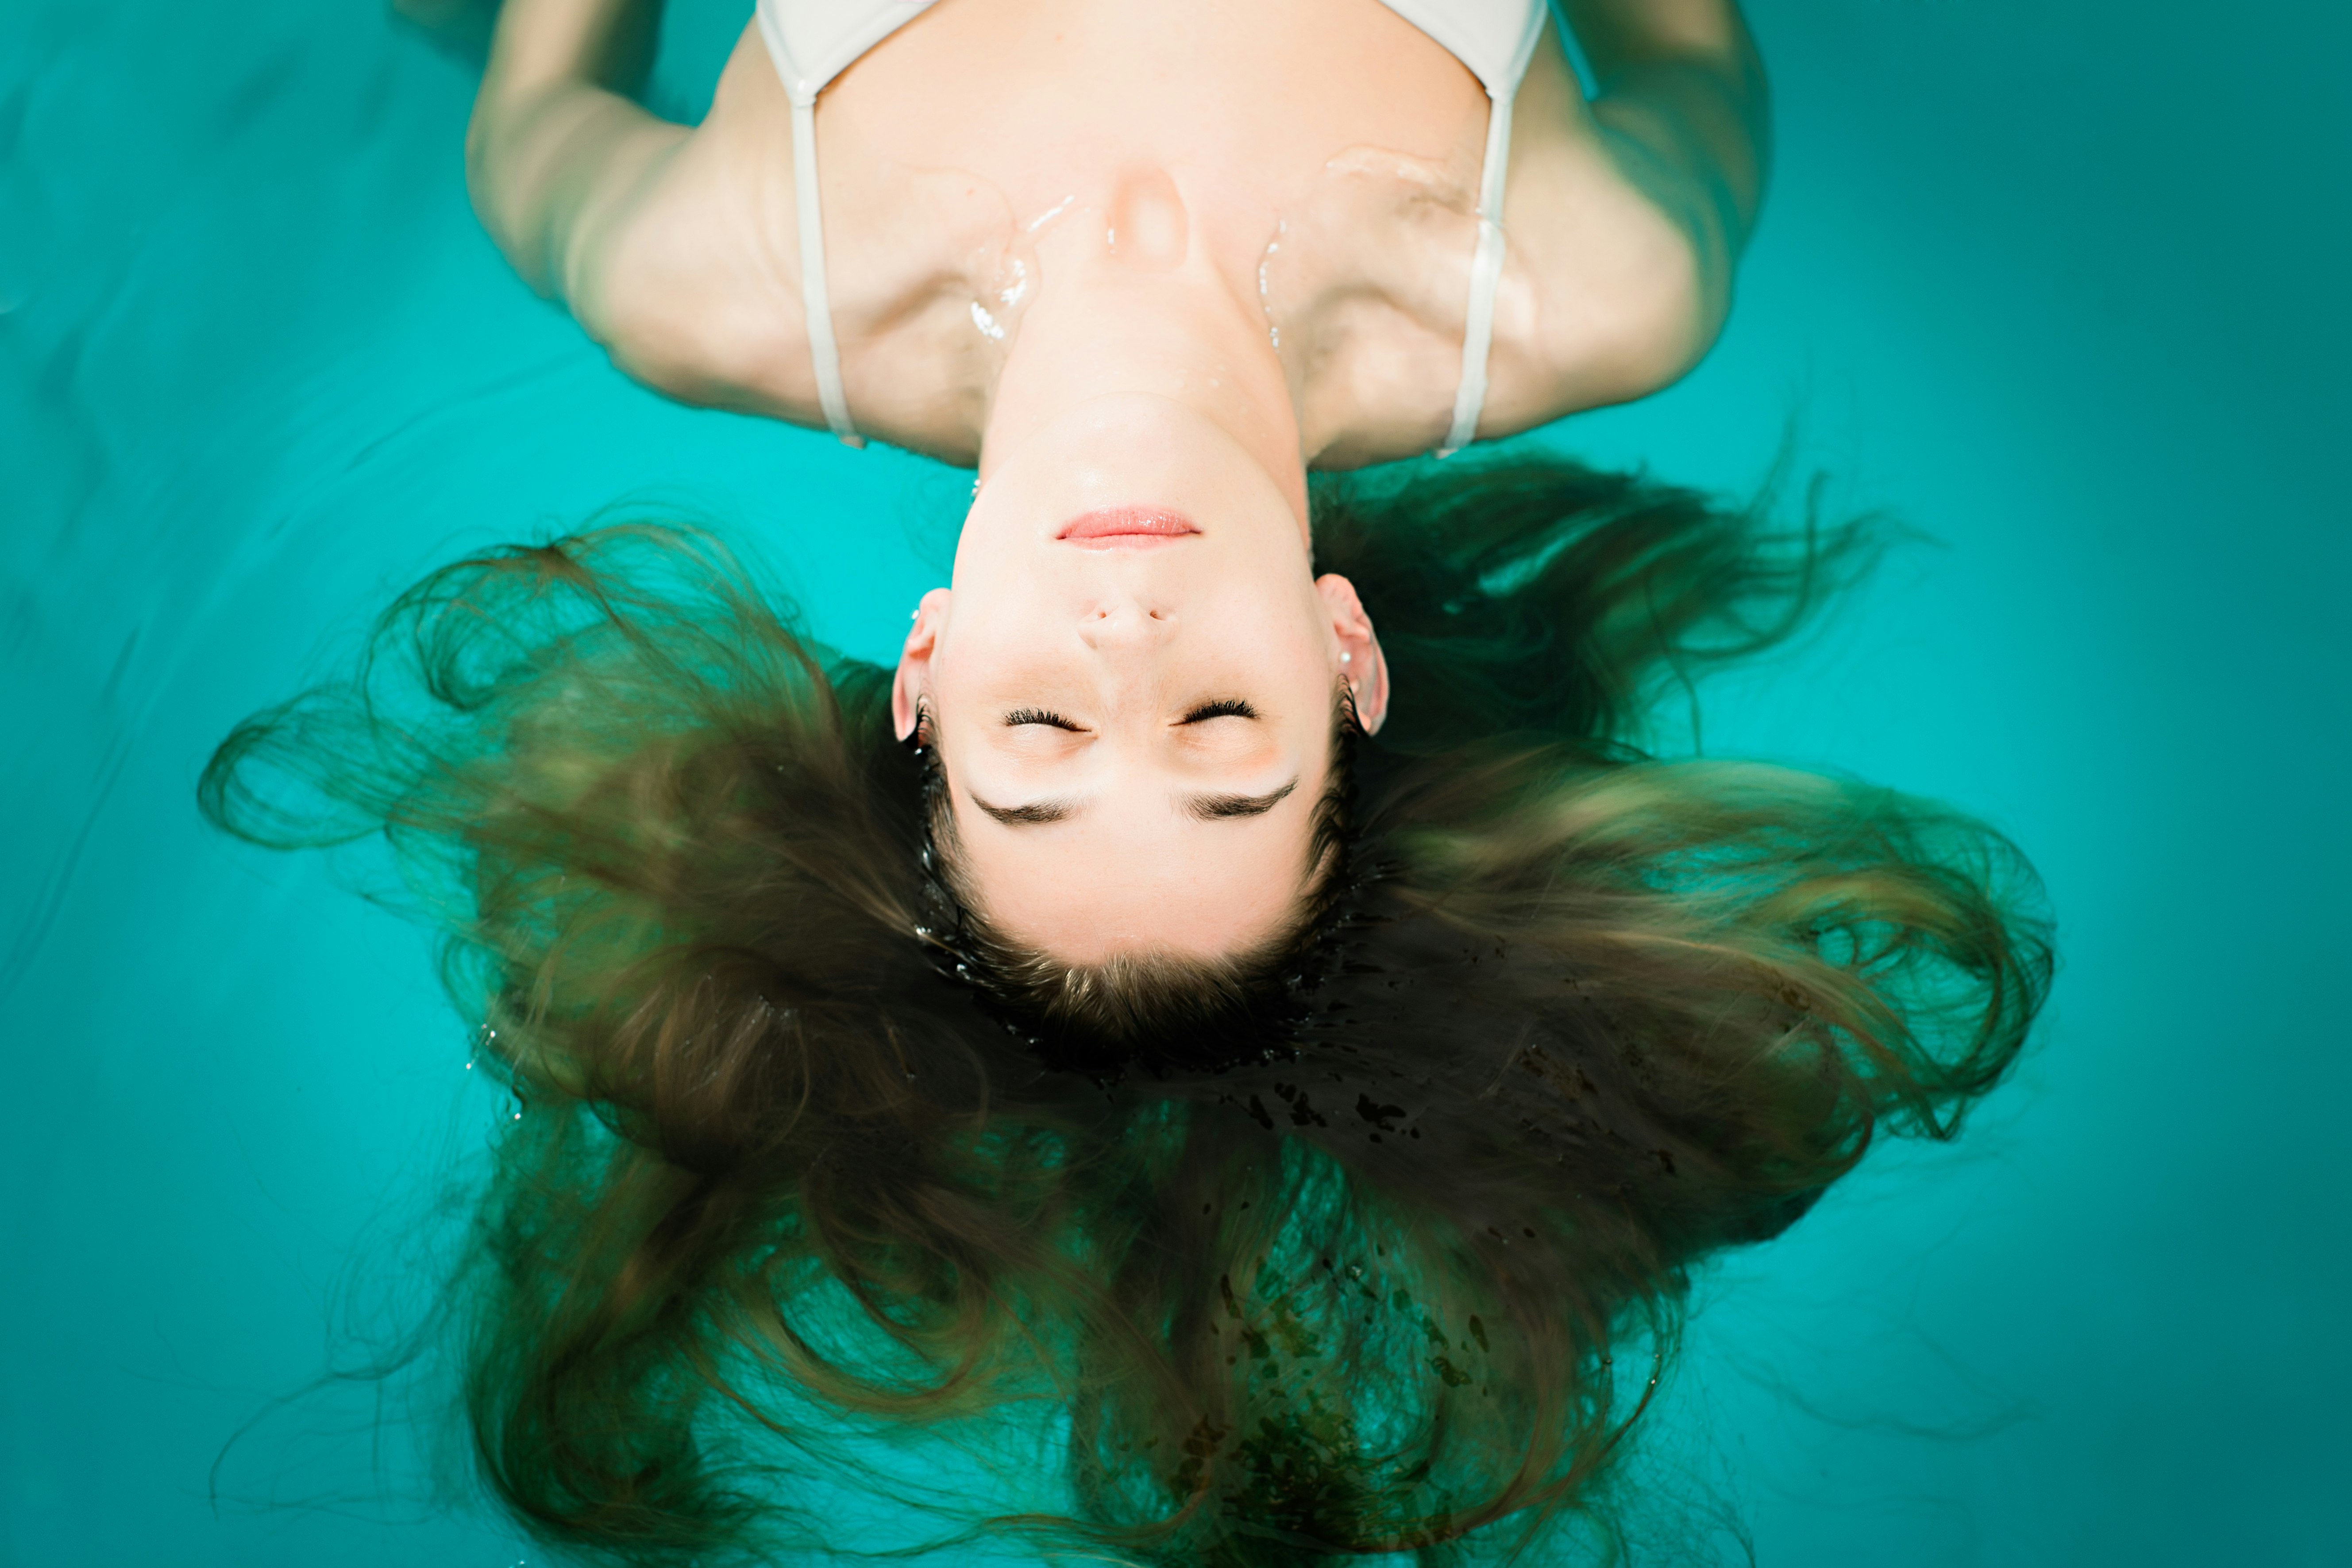 Експозиційна терапія передбачає поступове занурення у воду на все більшу глибину, одночасно практикуючи техніки релаксації, такі як глибоке дихання або медитація. 